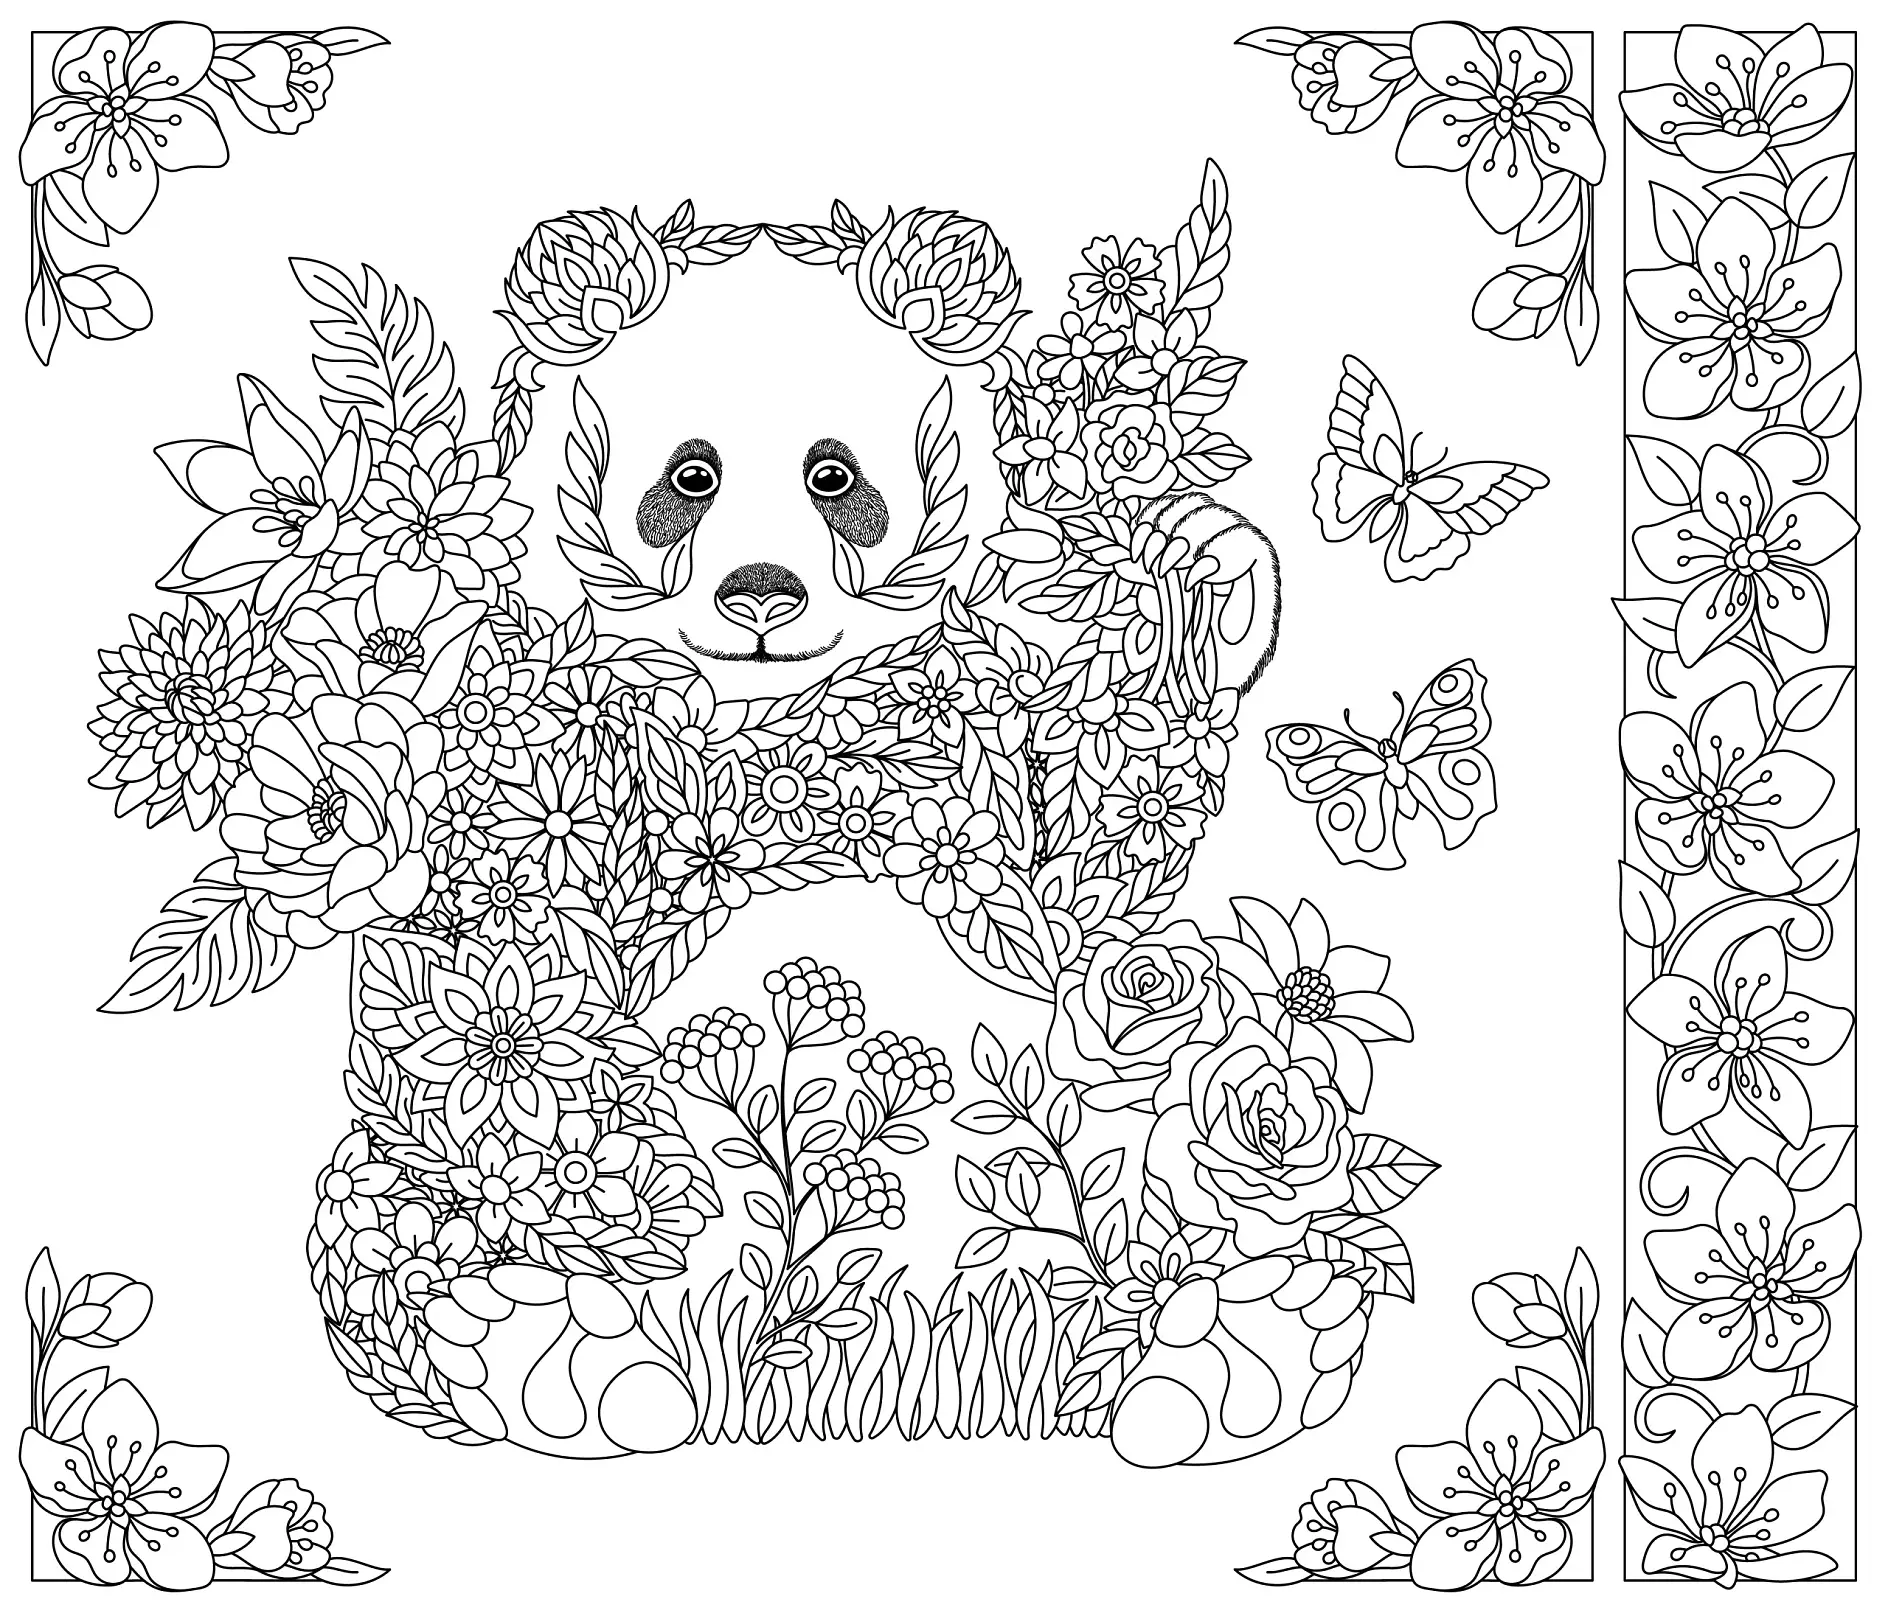 Ausmalbild Mandala mit Bär und floralen Mustern und Schmetterlingen